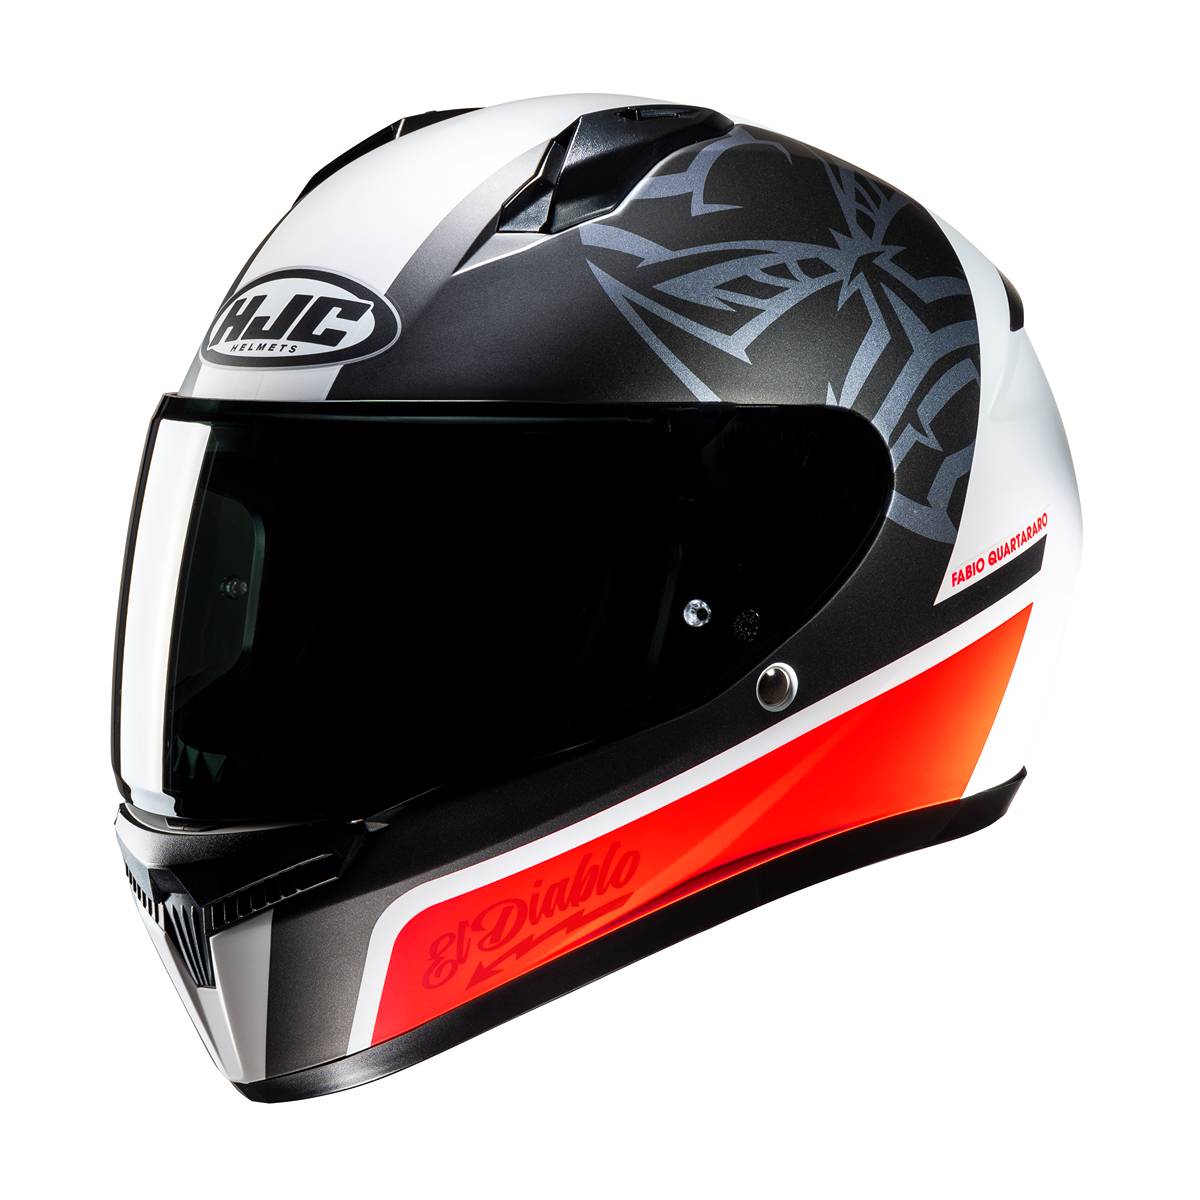 Image of HJC C10 Fabio Quartararo 20 Full Face Helmet White Red Size XS ID 8804269437209